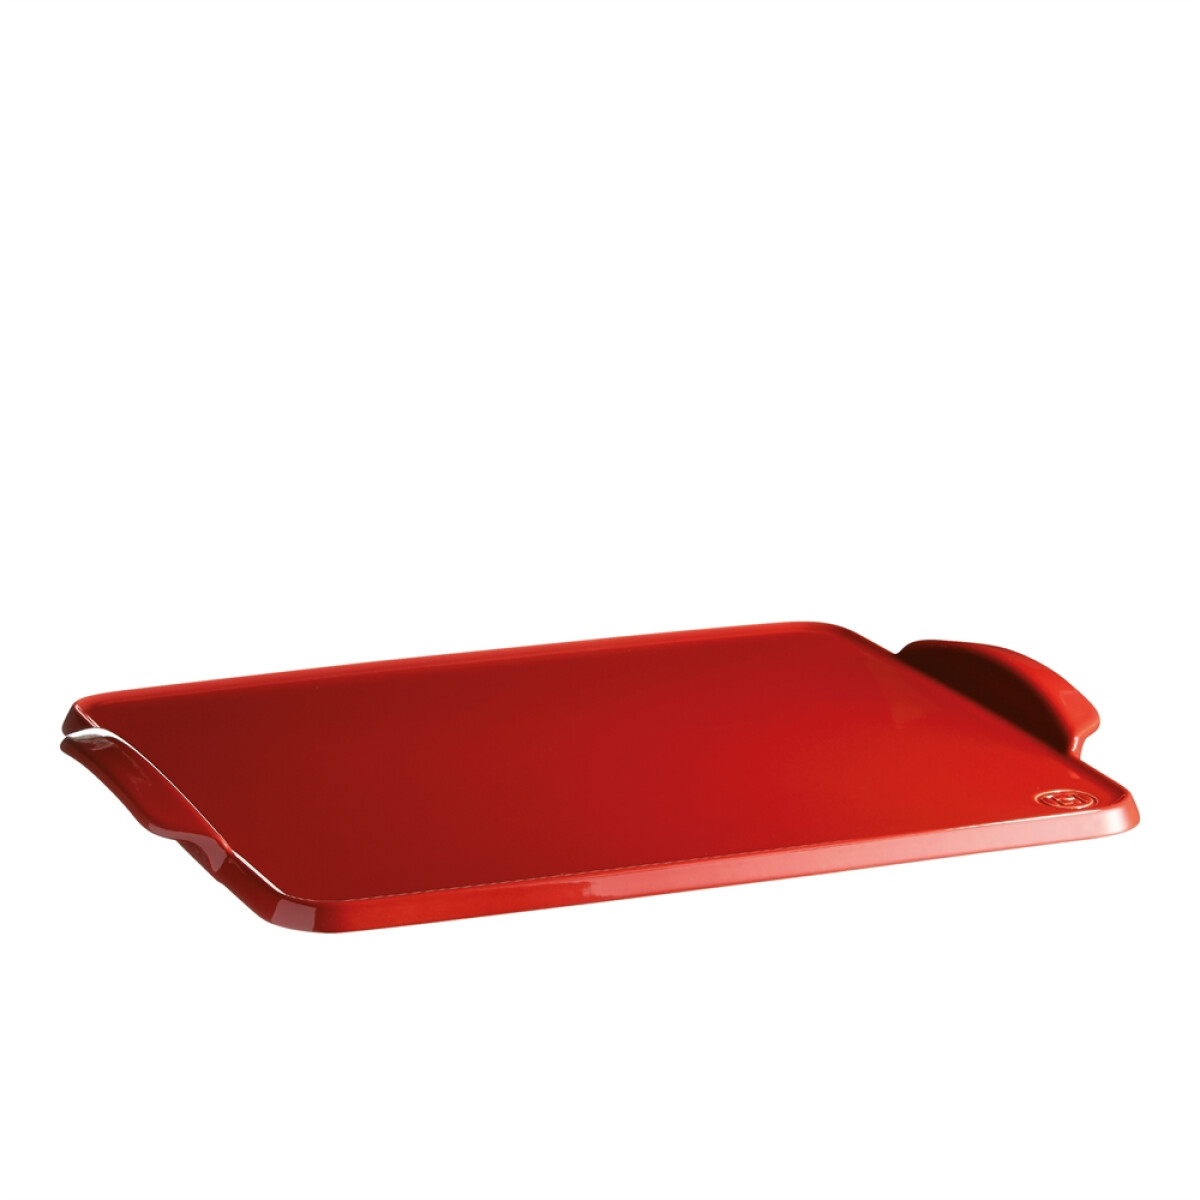 Керамична плоча за печене EMILE HENRY BAKING TRAY - 42 х 31 см, цвят червен